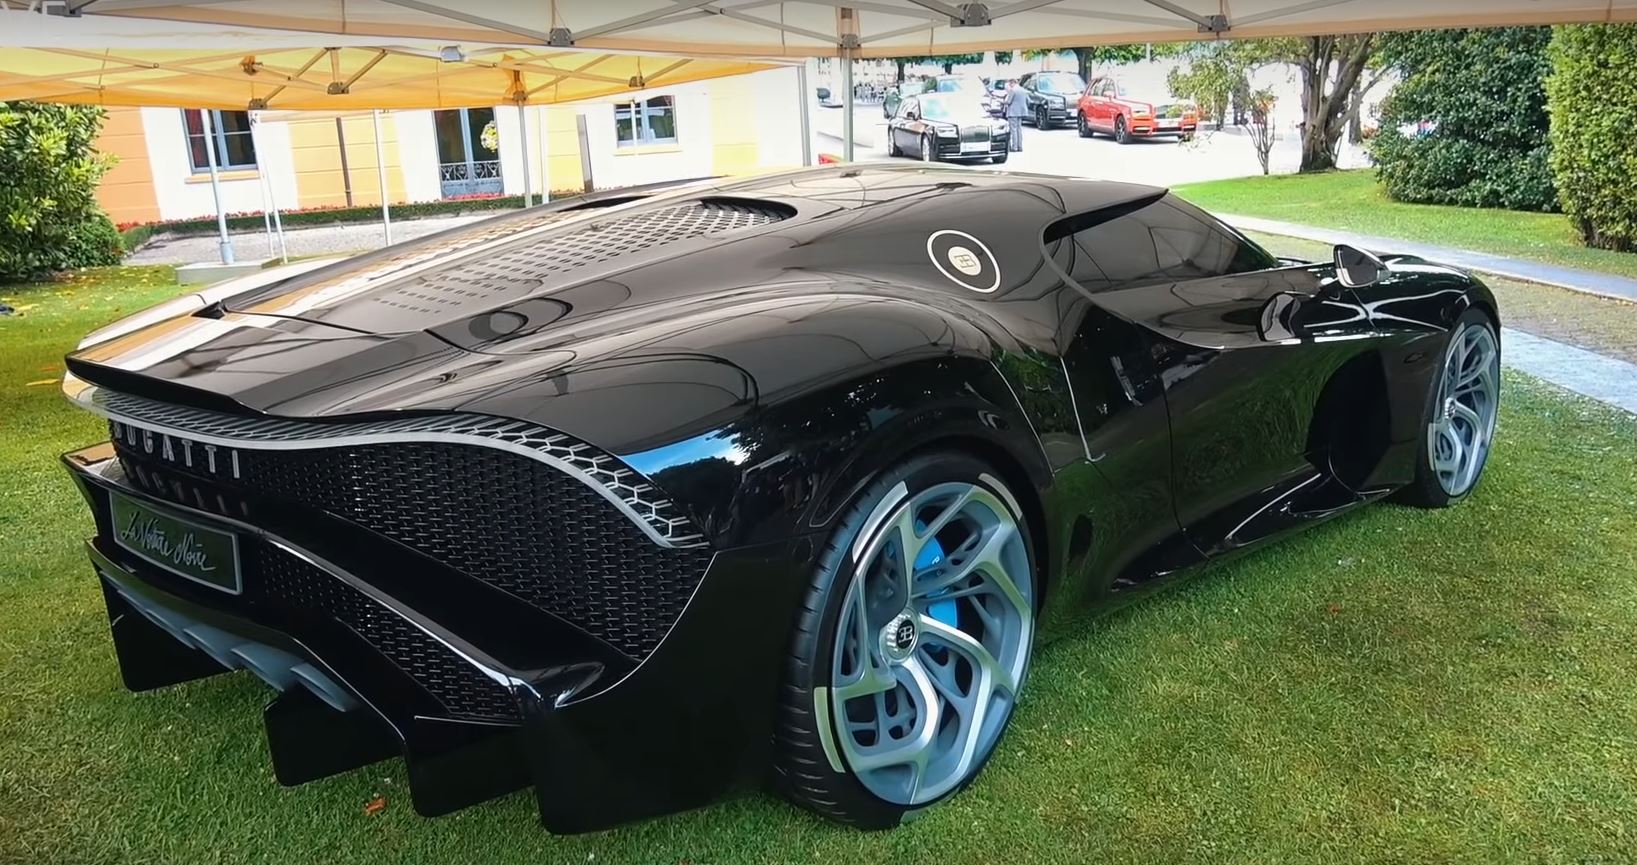 bugatti-la-voiture-noire-spotted-at-villa-d-este-as-world-s-most-expensive-car-134727-1.jpg